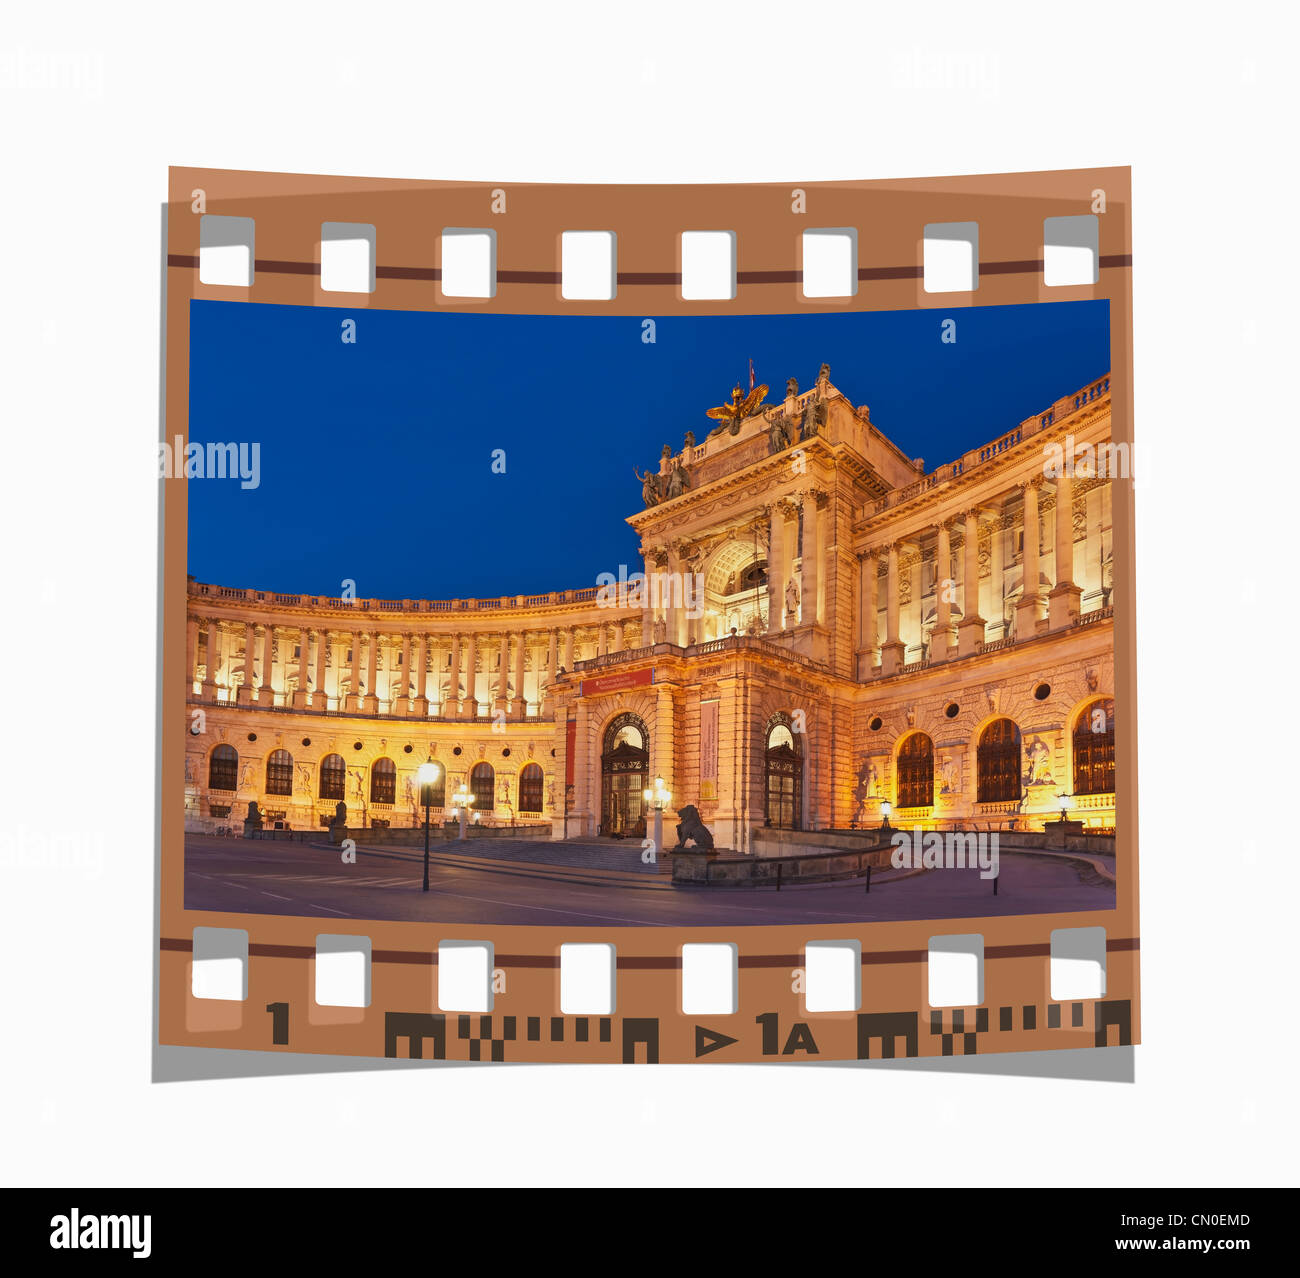 Filmstreifen: Das neue Schloss ist Teil der Wiener Hofburg und die monumentale Kaiserforum, Wien, Österreich Stockfoto